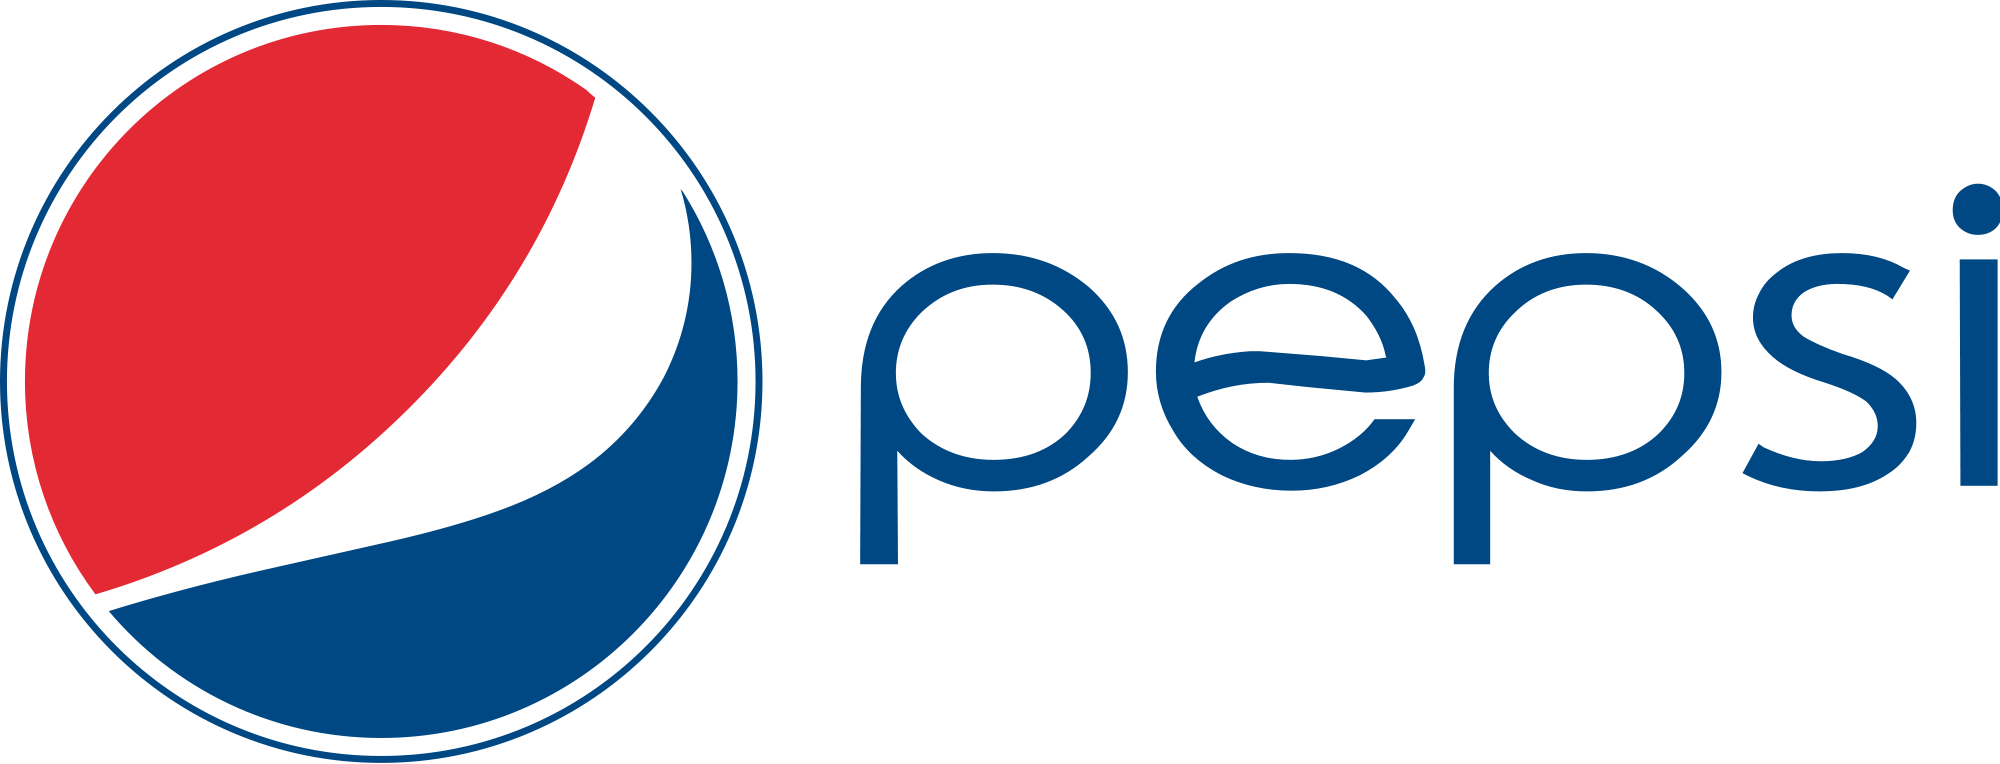 Pepsi Globe, the free encyclopedia